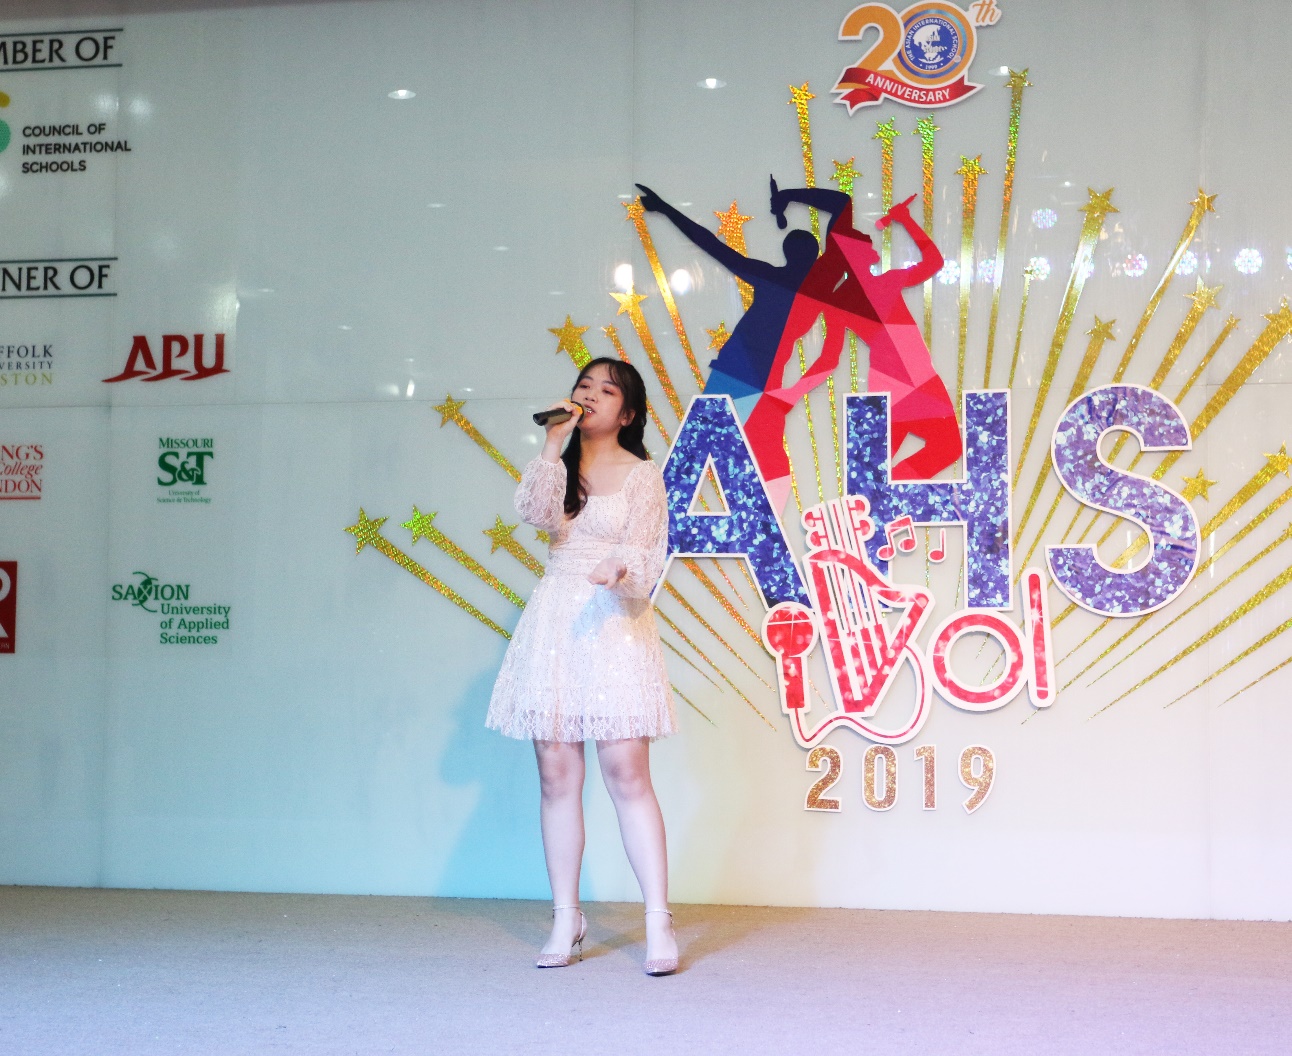 Bùng nổ cảm xúc cùng các ngôi sao âm nhạc tại vòng chung kết AHS Idol 2019